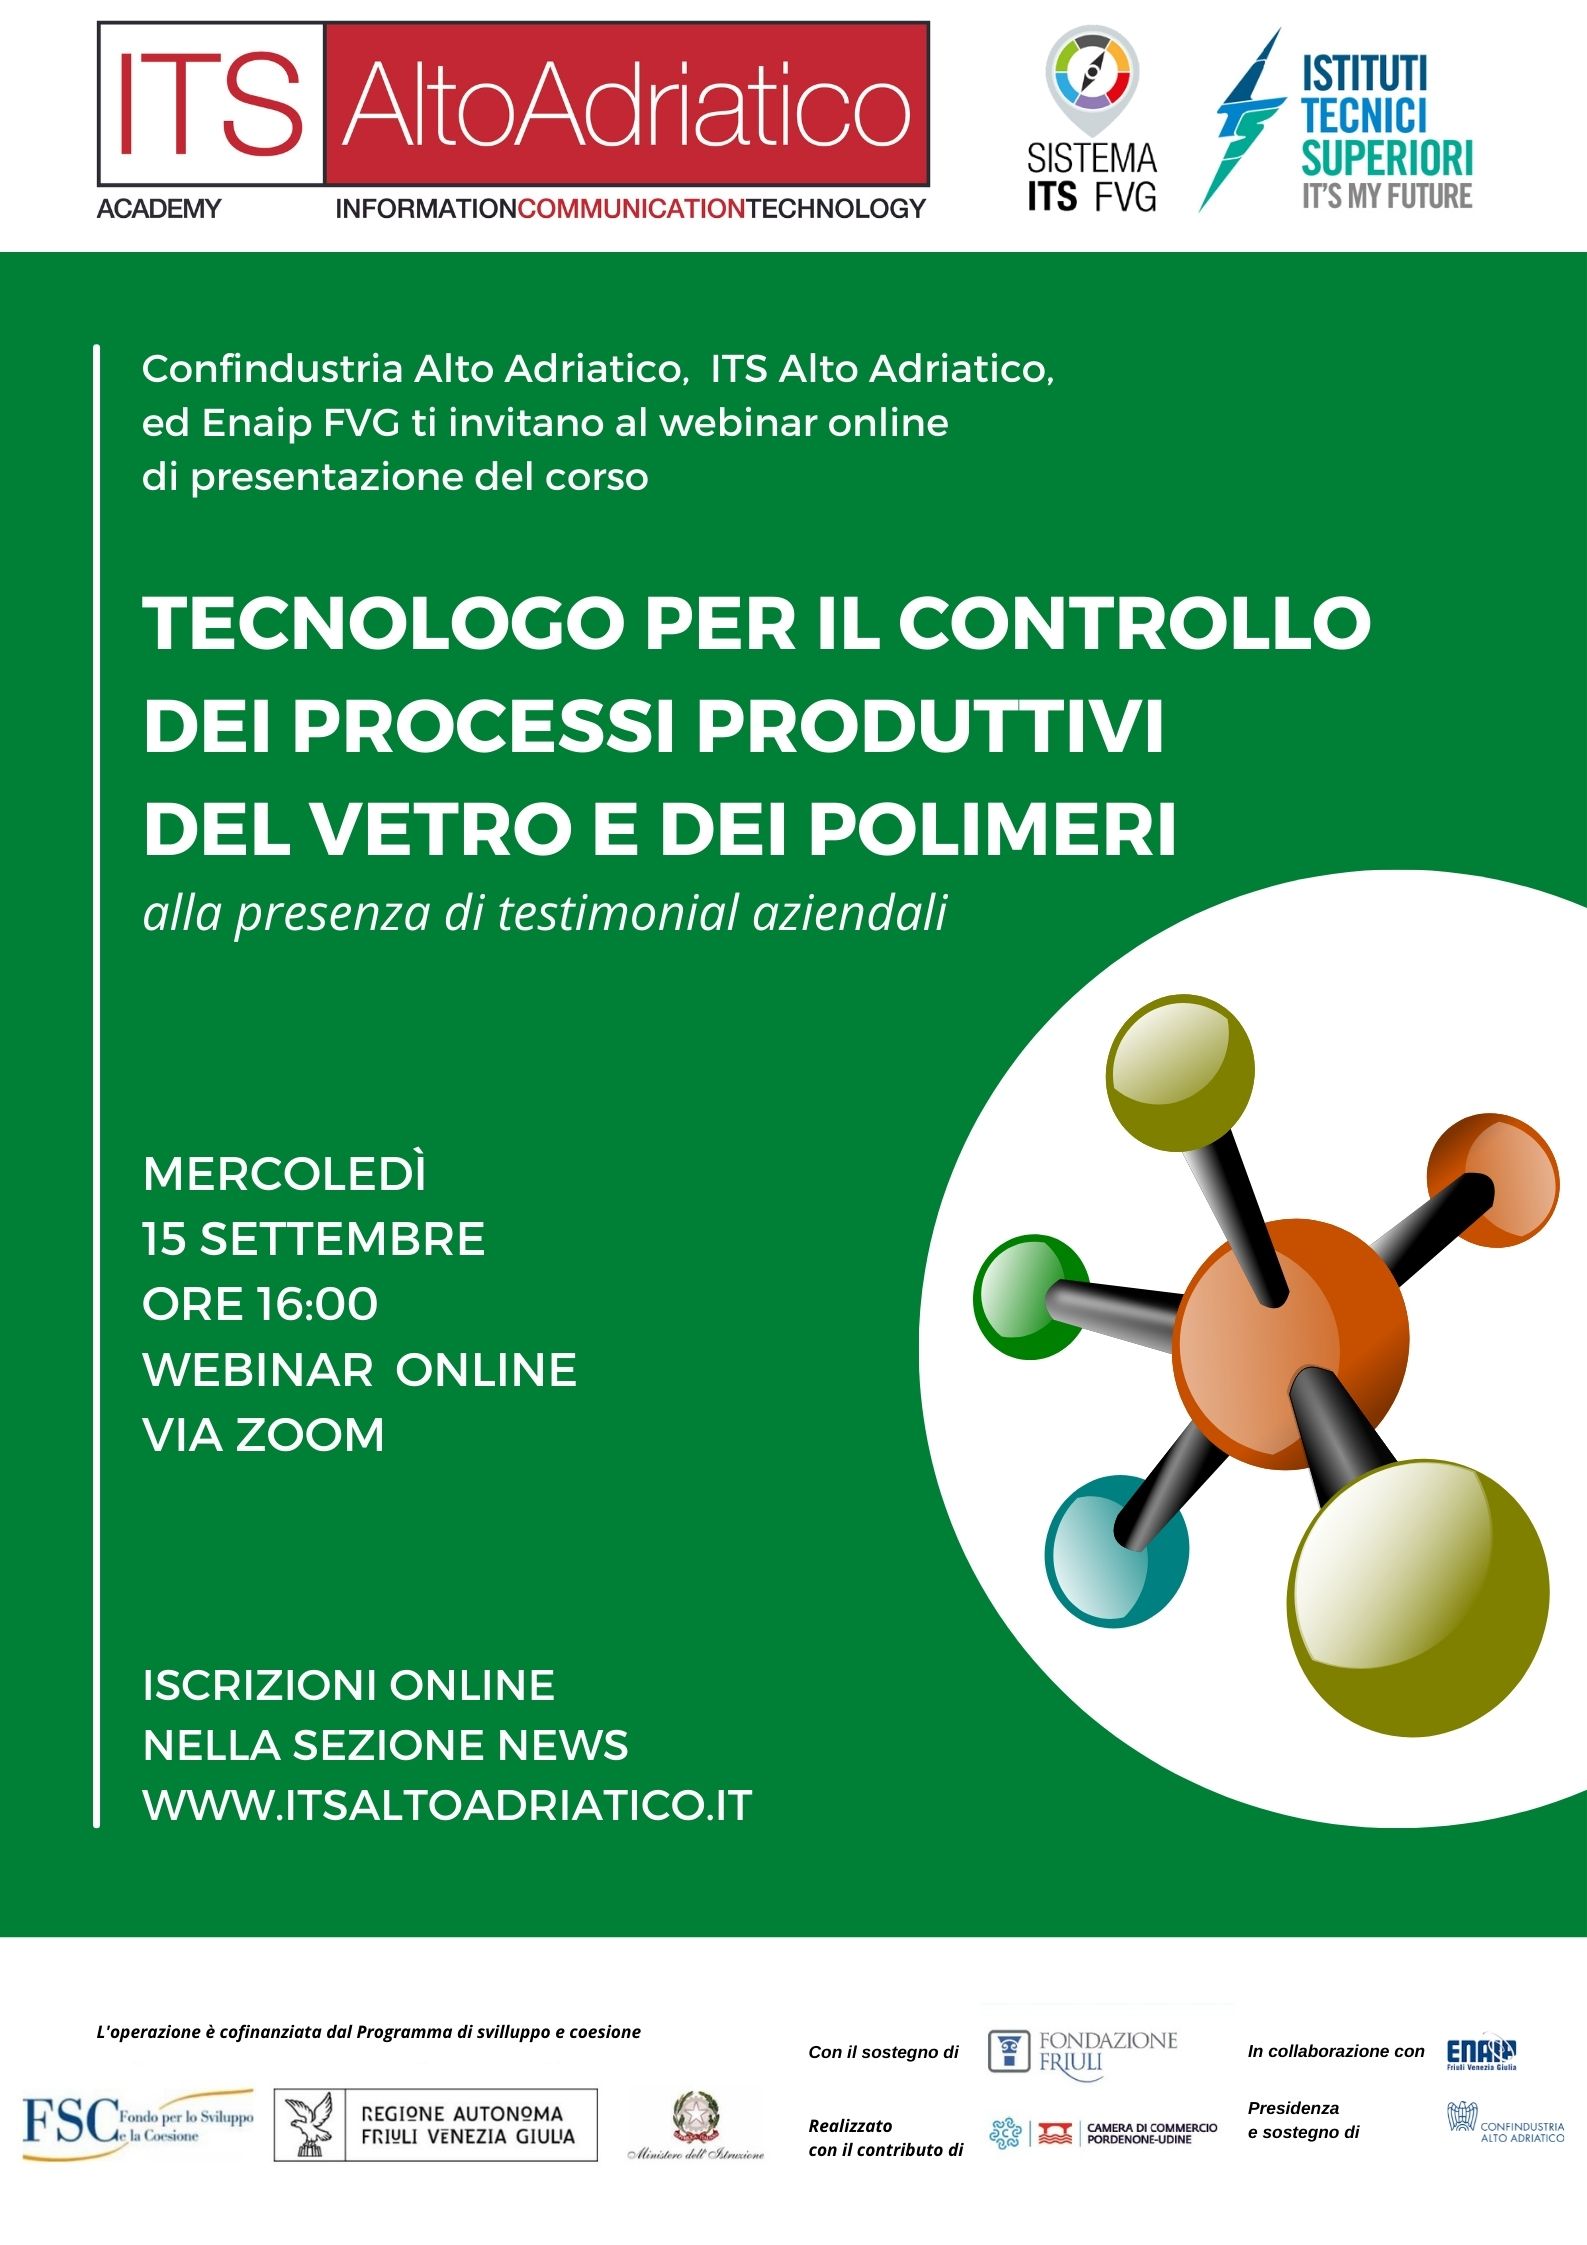 Mercoledì 15 settembre anteprima del 1° corso ITS in Italia dedicato al vetro-polimeri